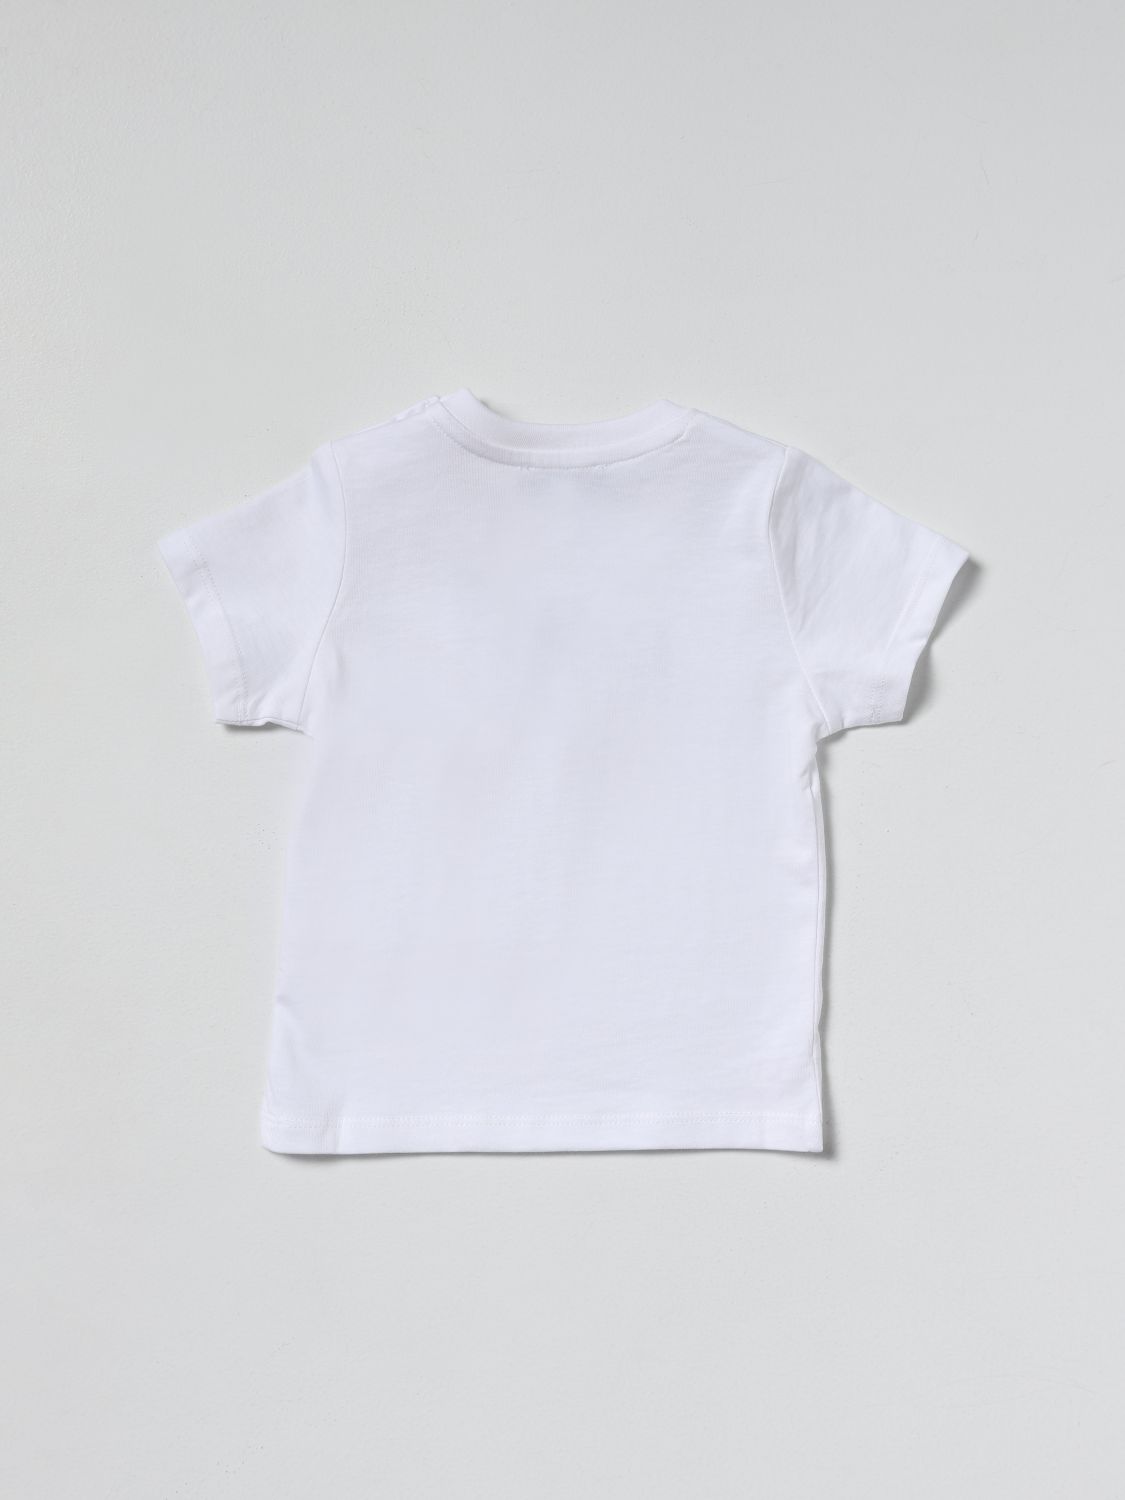 T-shirt Hugo Boss: Basic Hugo Boss t-shirt in cotton white 2